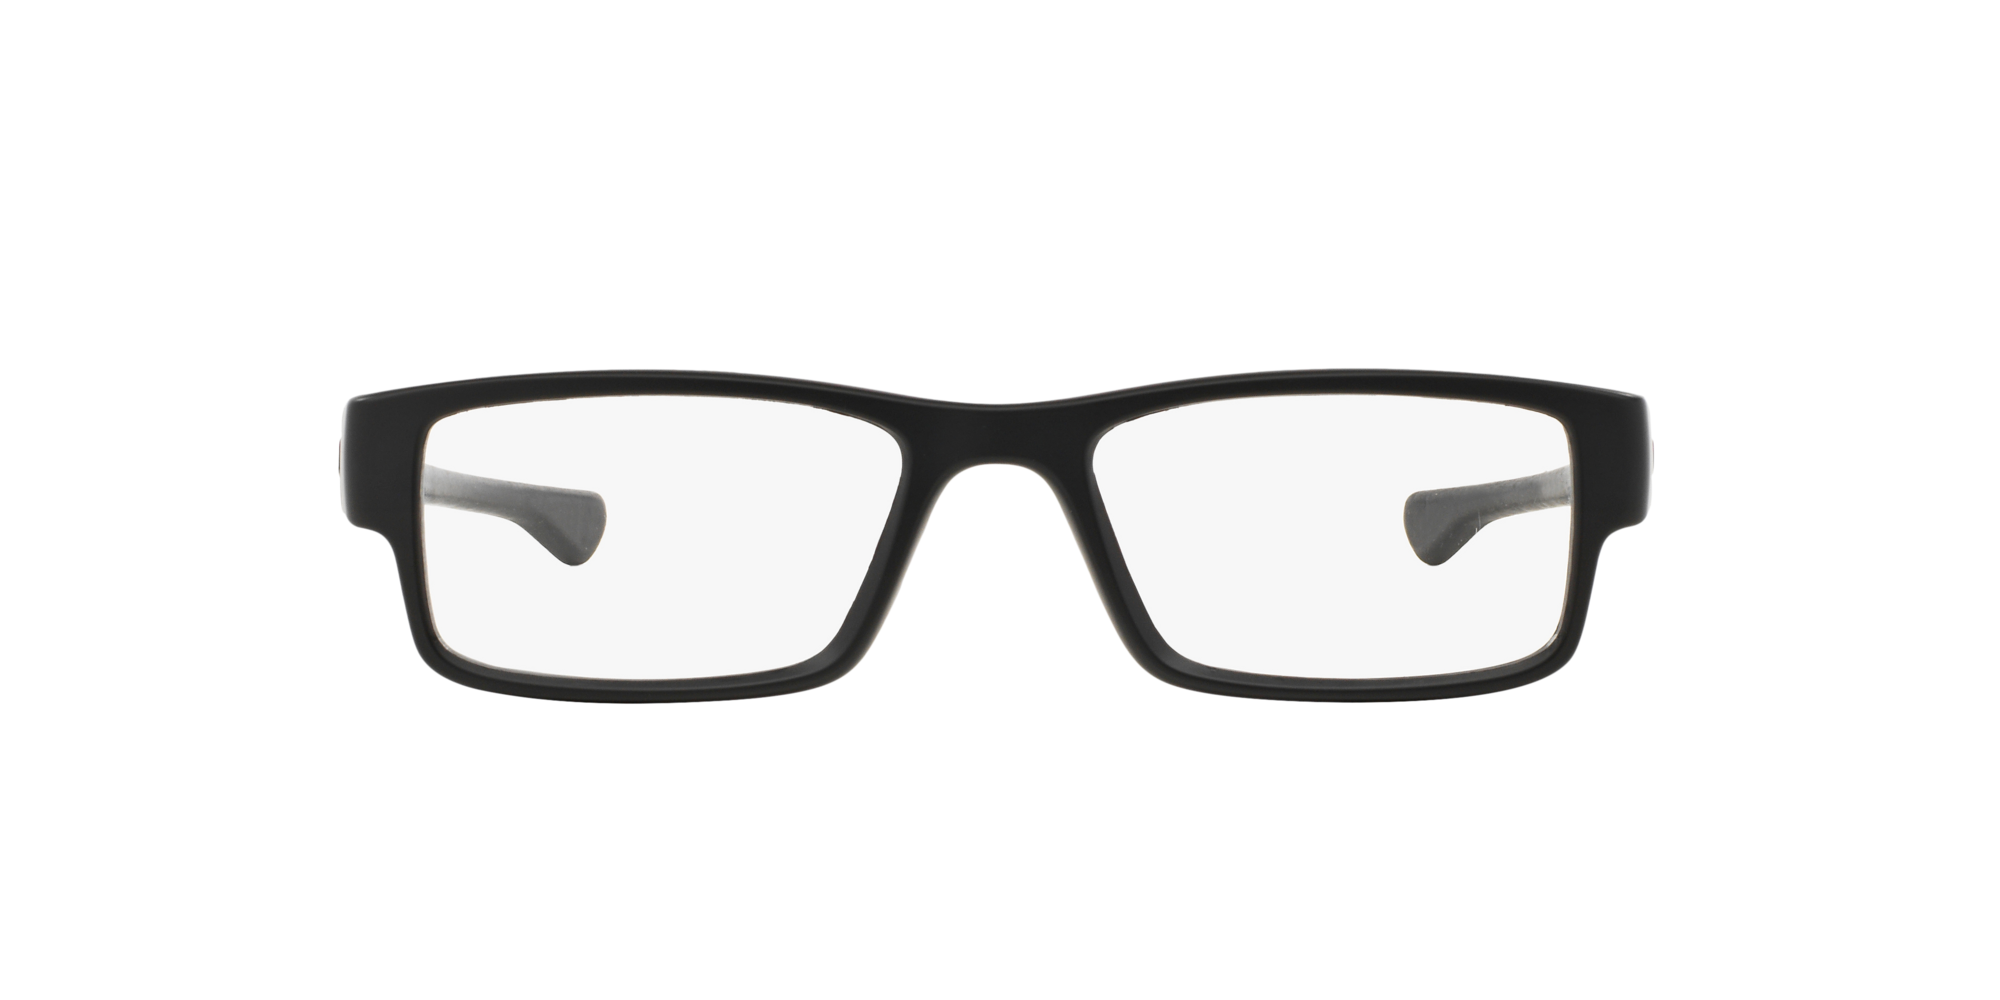 Das Bild zeigt die Korrektionsbrille OX8046 804601  von der Marke Oakley  in  schwarz satiniert.